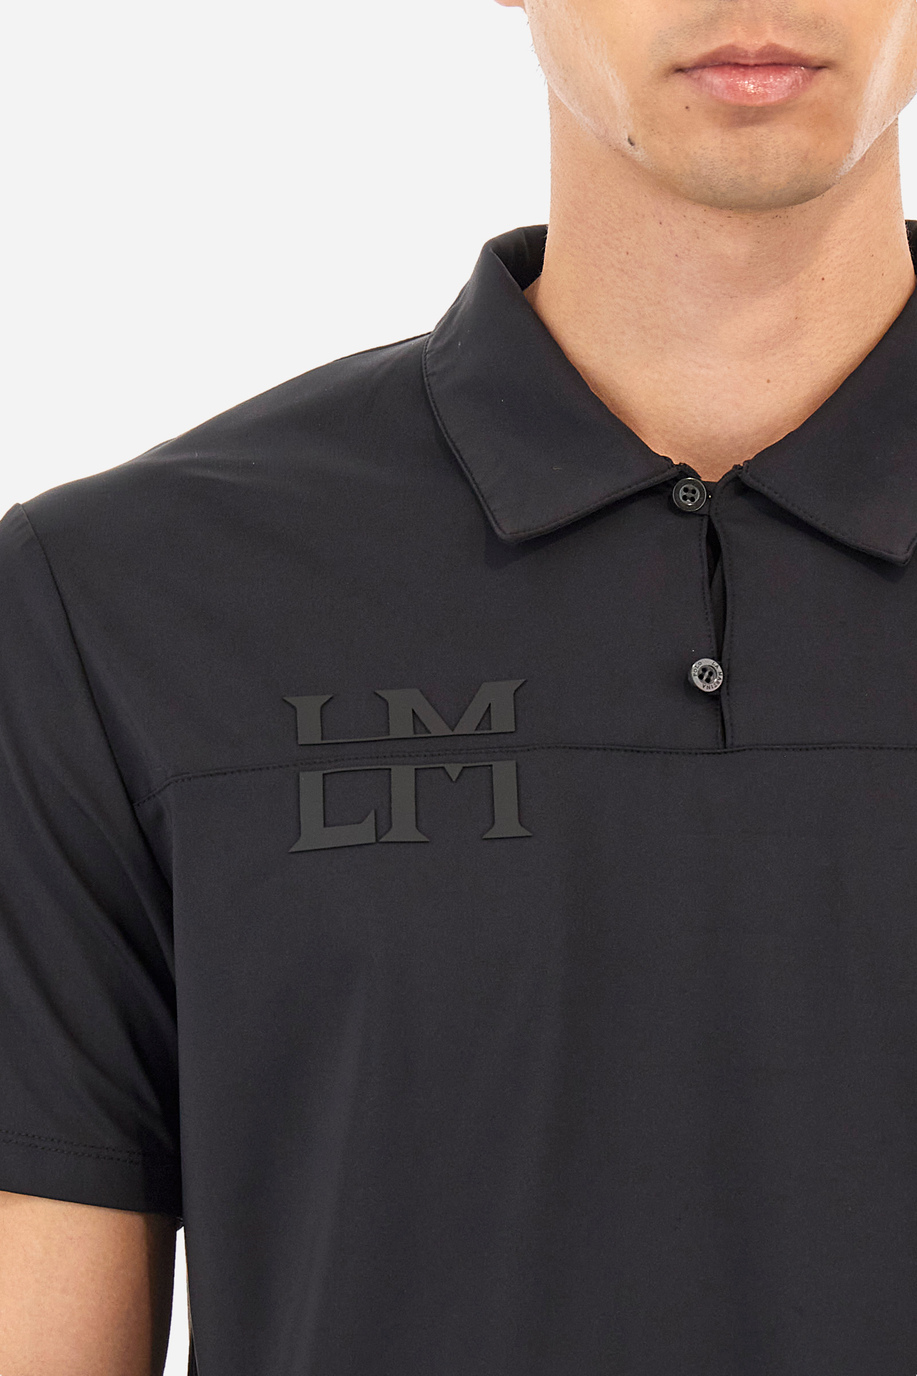 Man polo shirt in regular fit - Walid - Gerard Loft X La Martina | La Martina - Official Online Shop